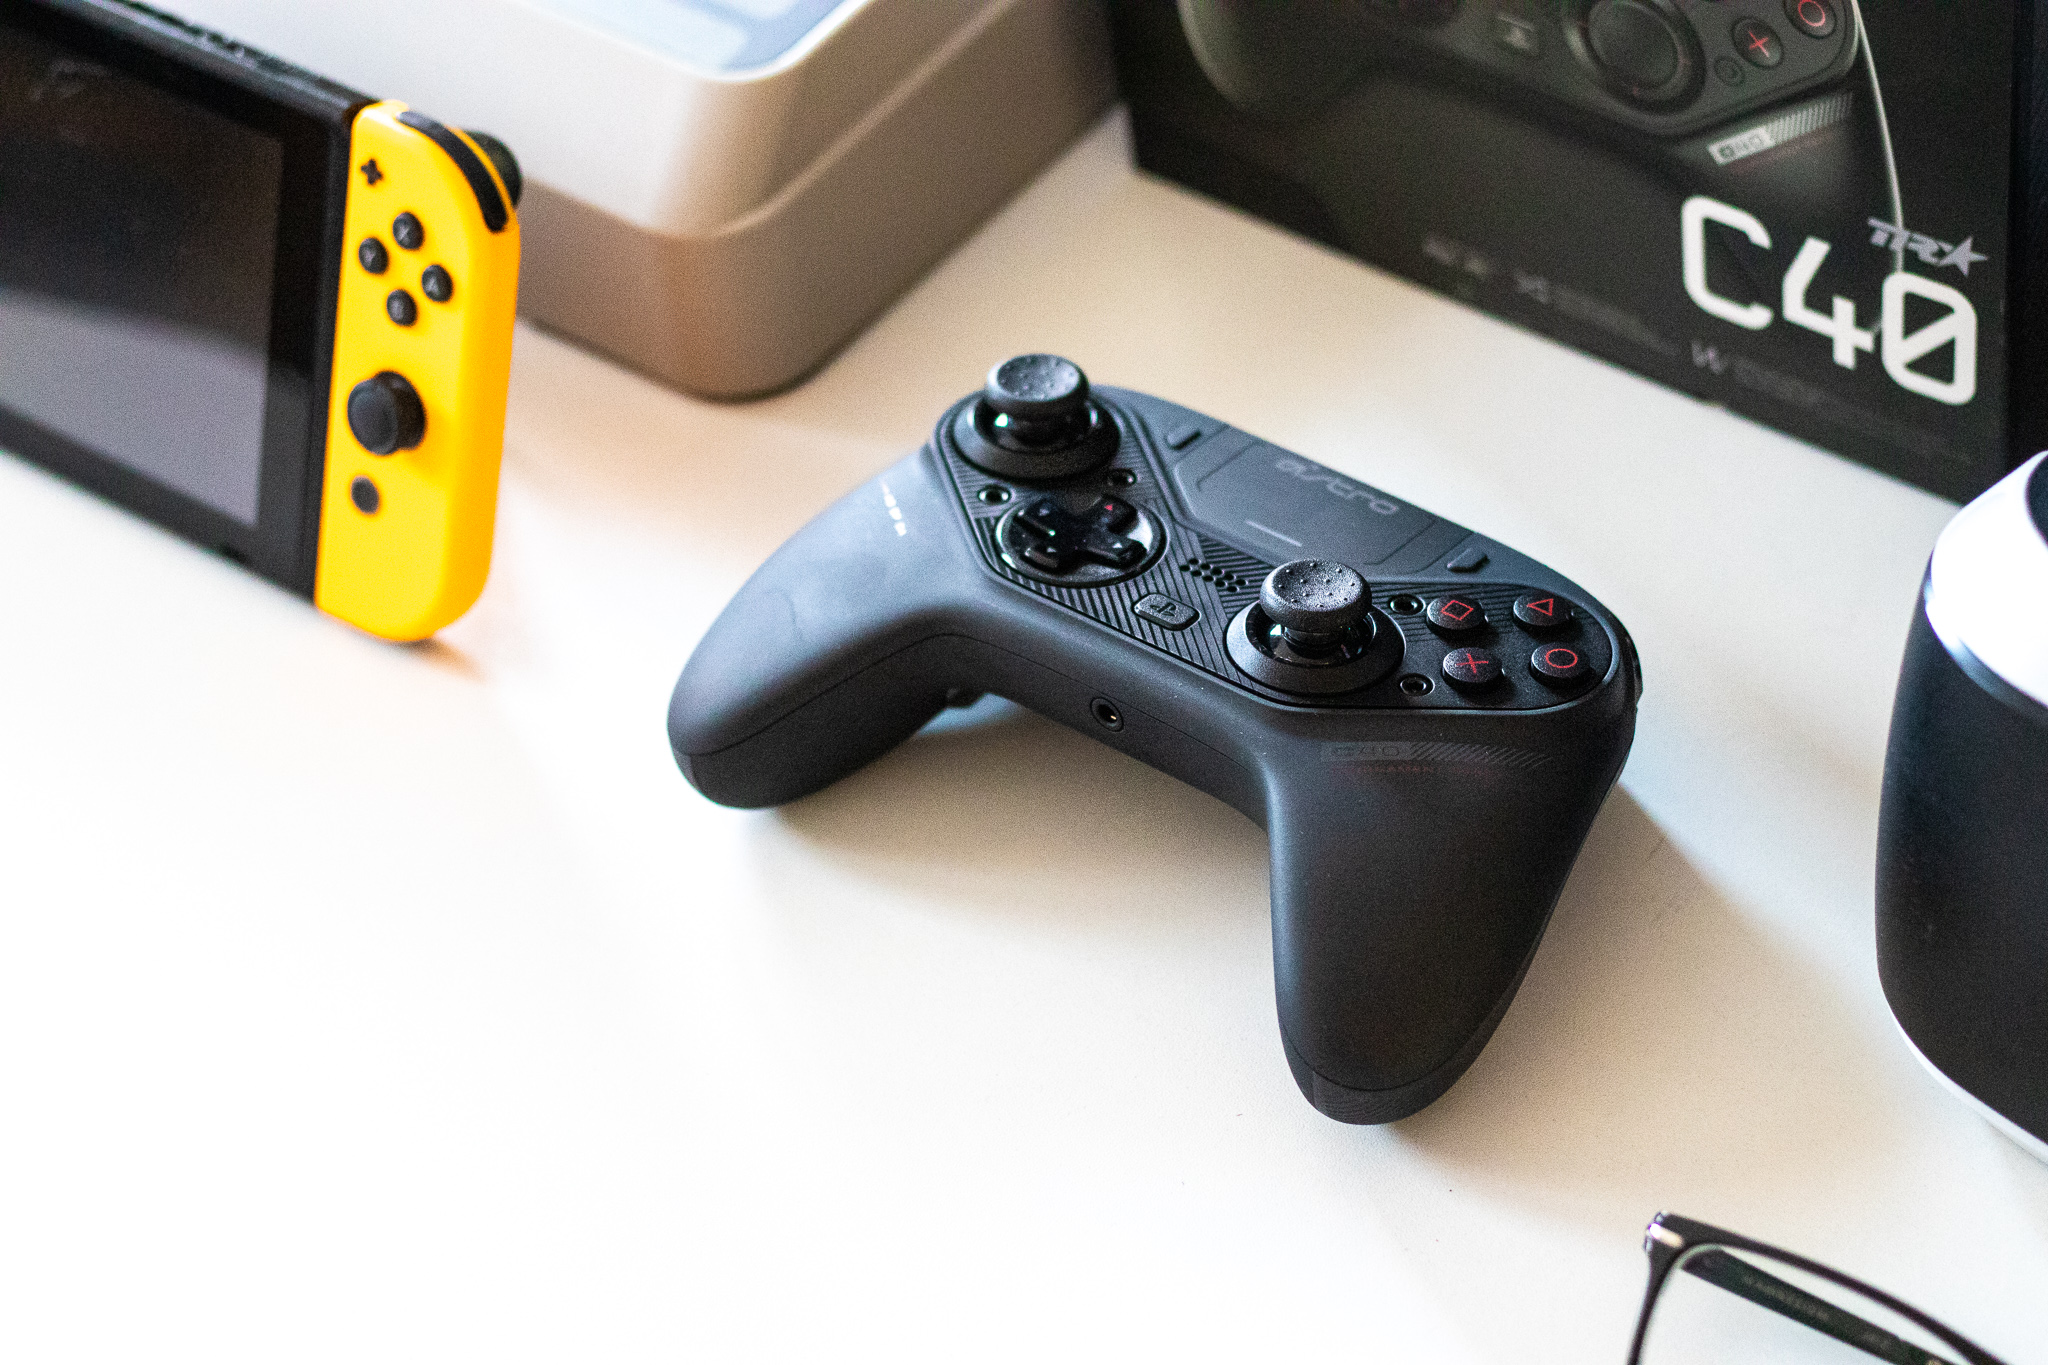 Pengaturan analog dari PlayStation atau Xbox? Kontroler Astro C40 TR menawarkan kedua pengaturan ini - tinjauan 1